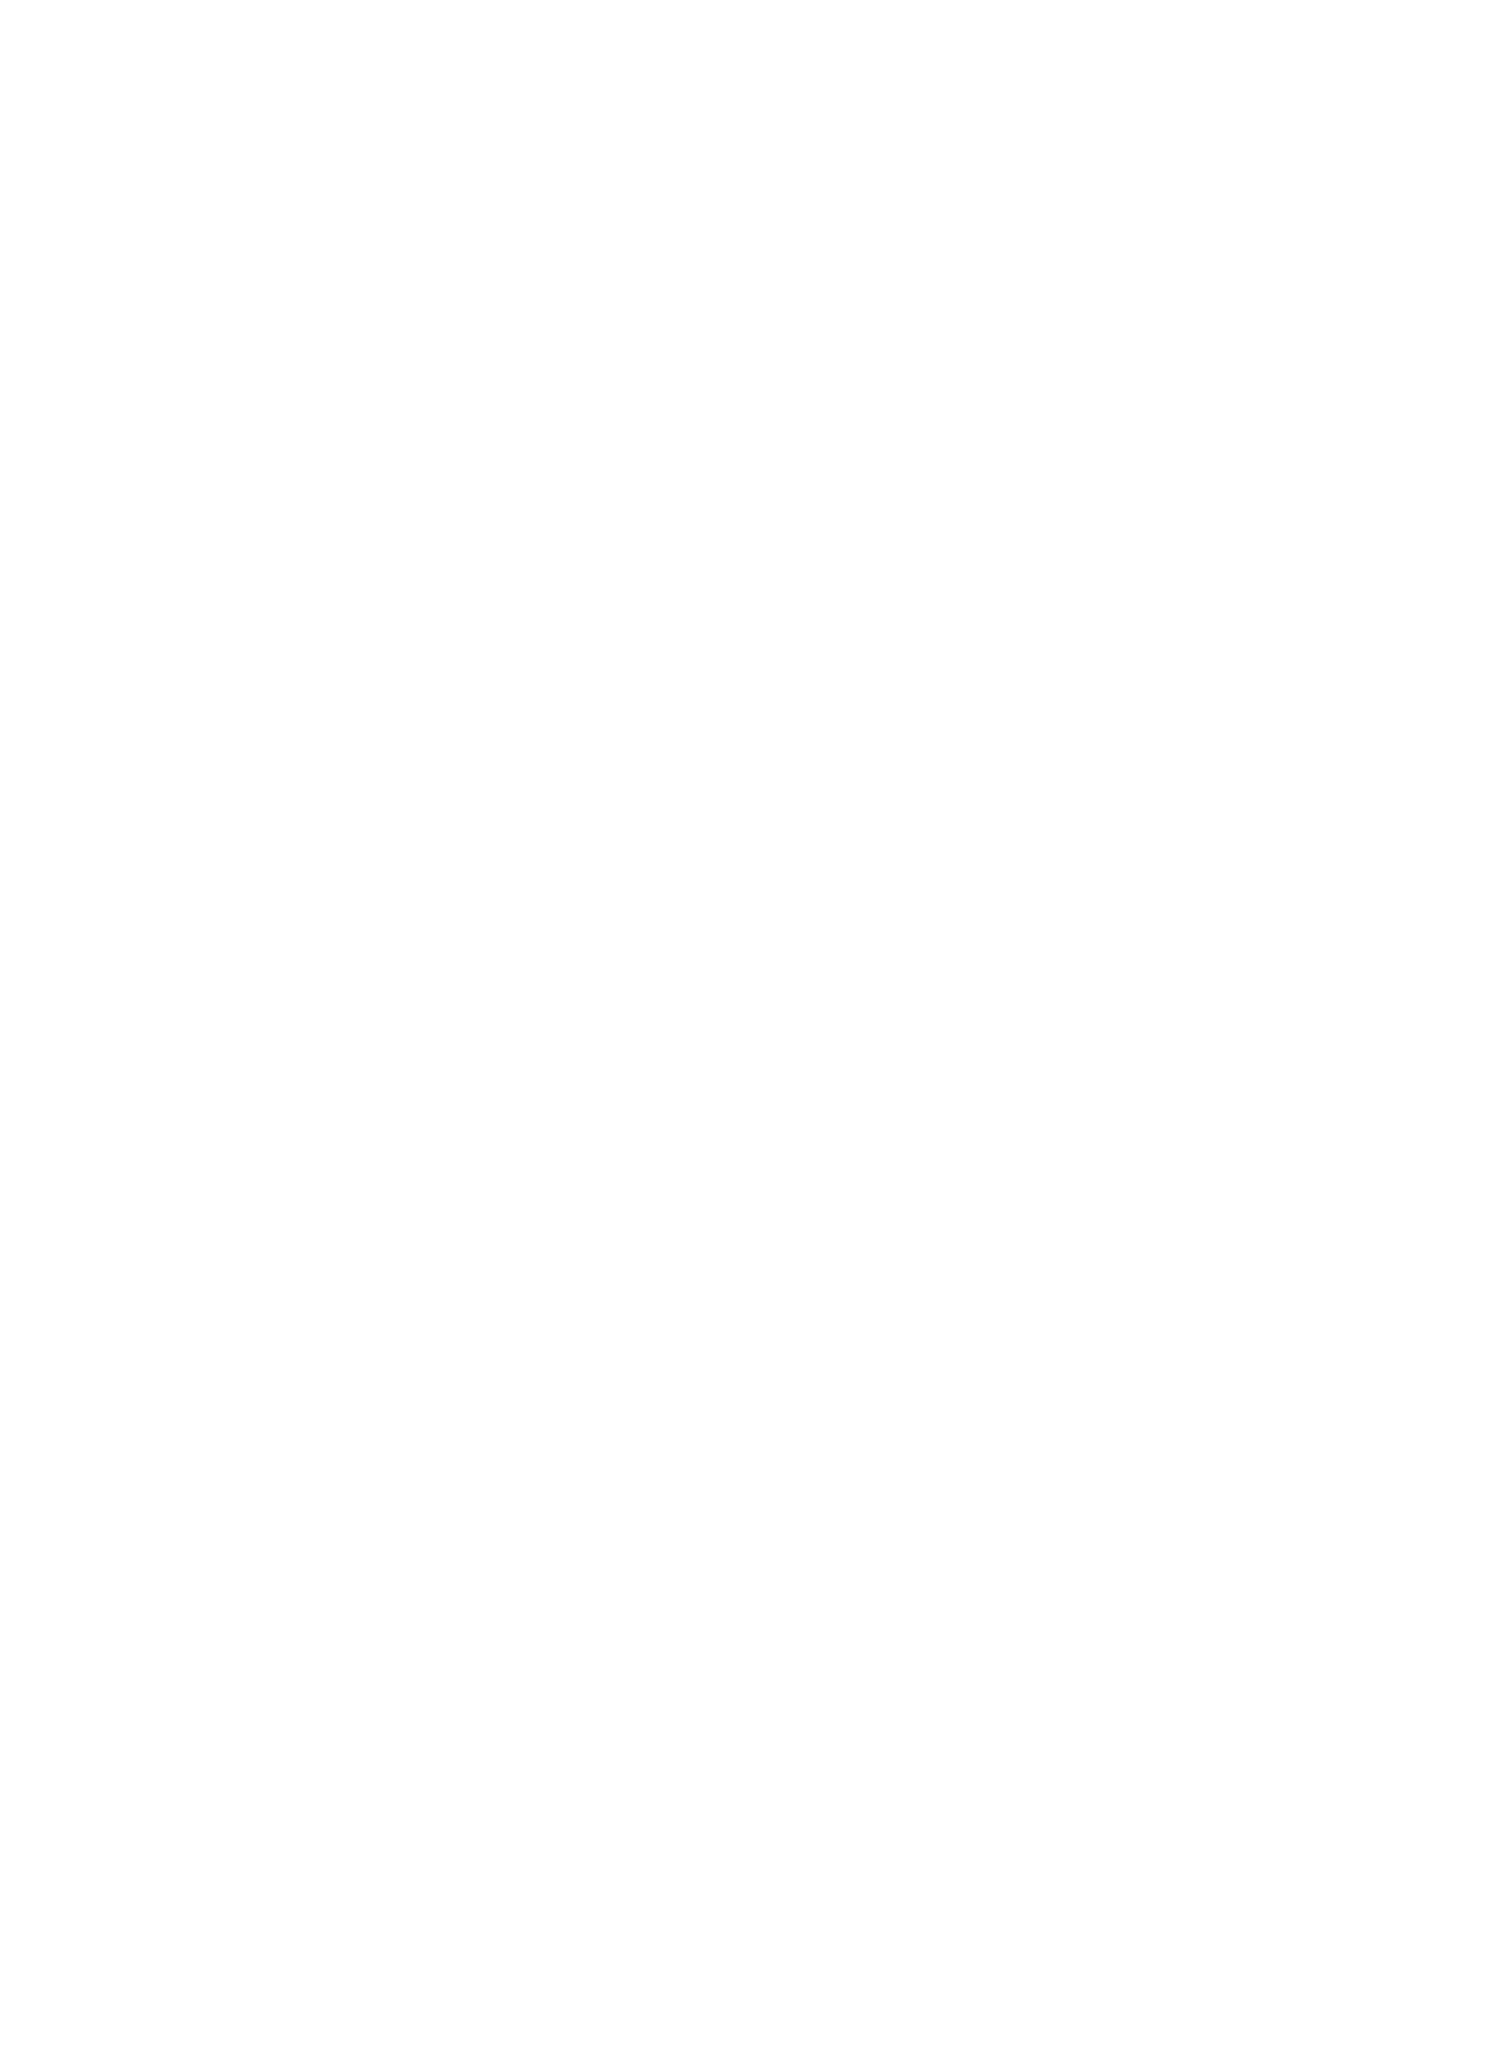 Sankofa Farms